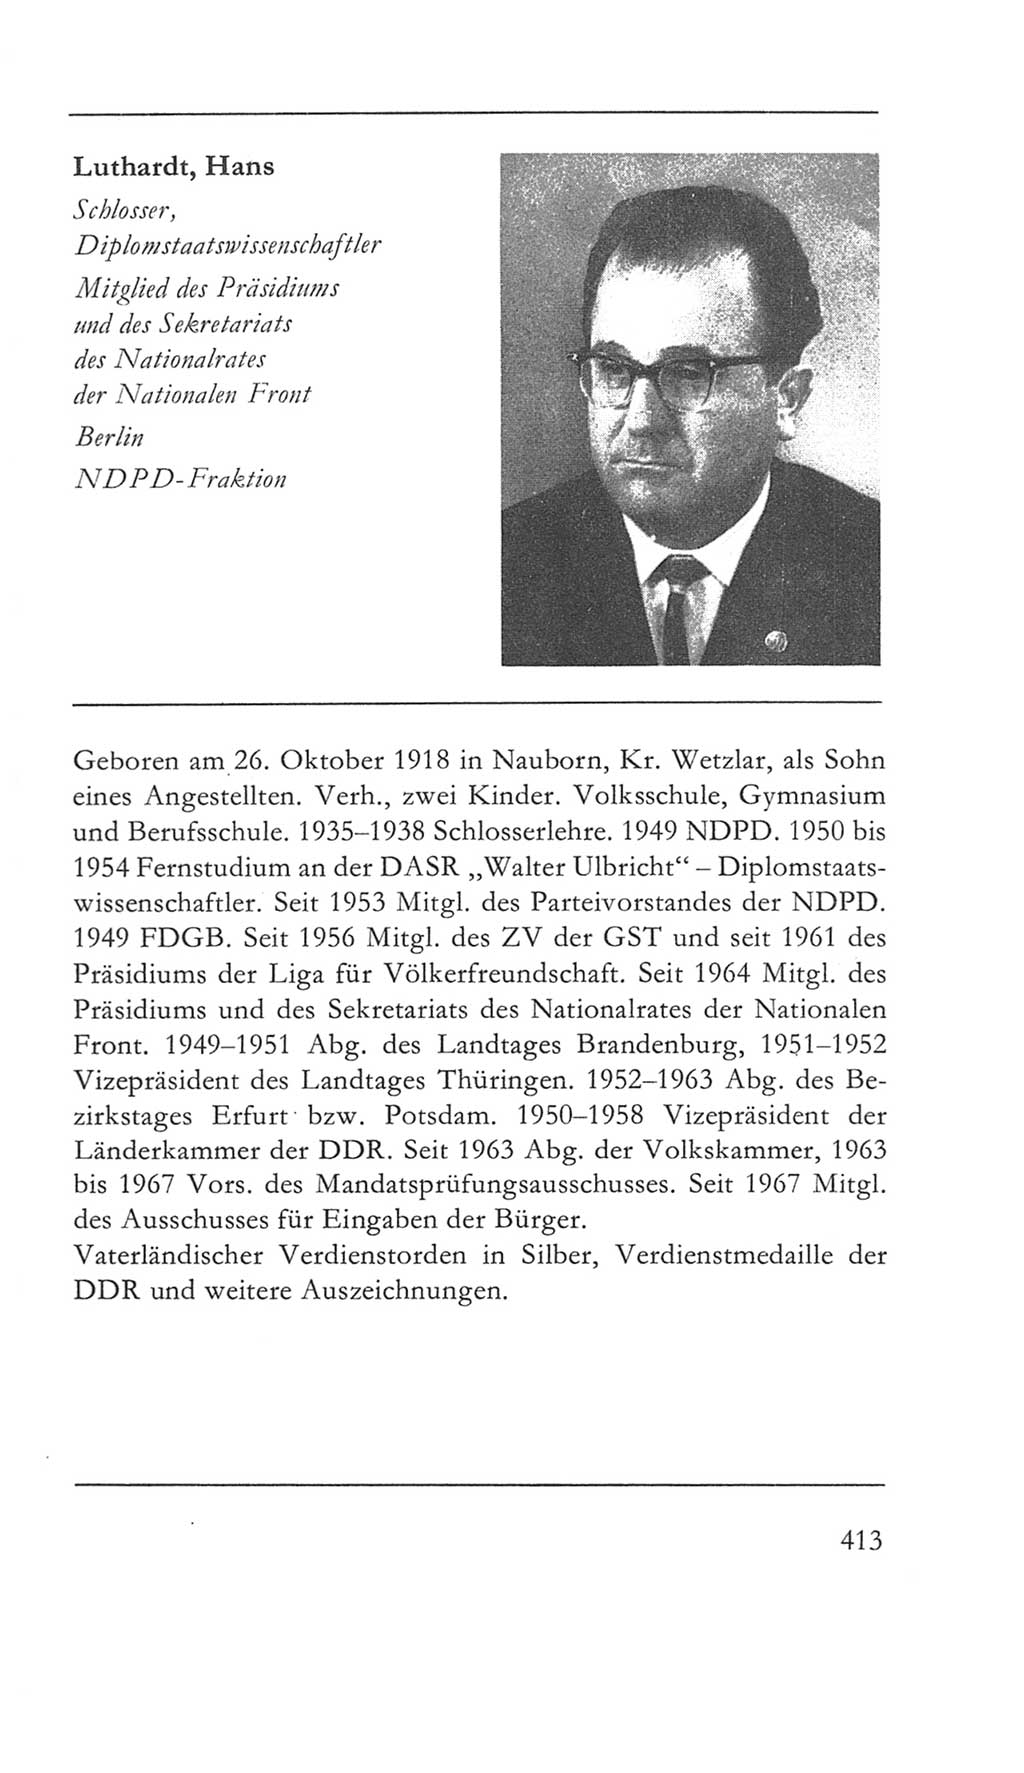 Volkskammer (VK) der Deutschen Demokratischen Republik (DDR) 5. Wahlperiode 1967-1971, Seite 413 (VK. DDR 5. WP. 1967-1971, S. 413)